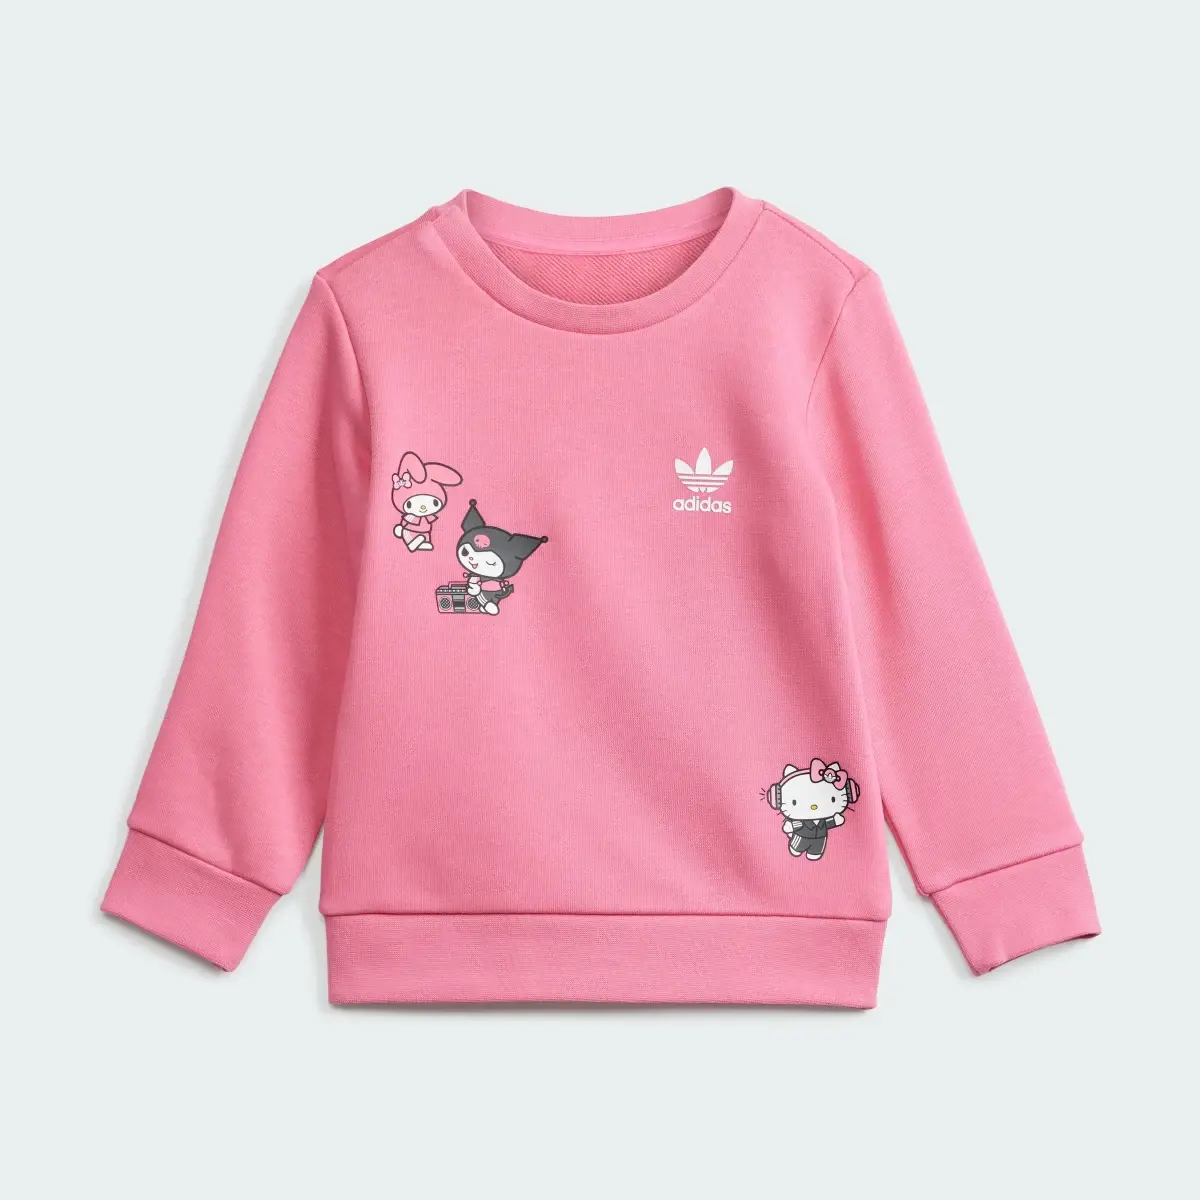 Adidas Originals x Hello Kitty Eşofman Takımı. 3